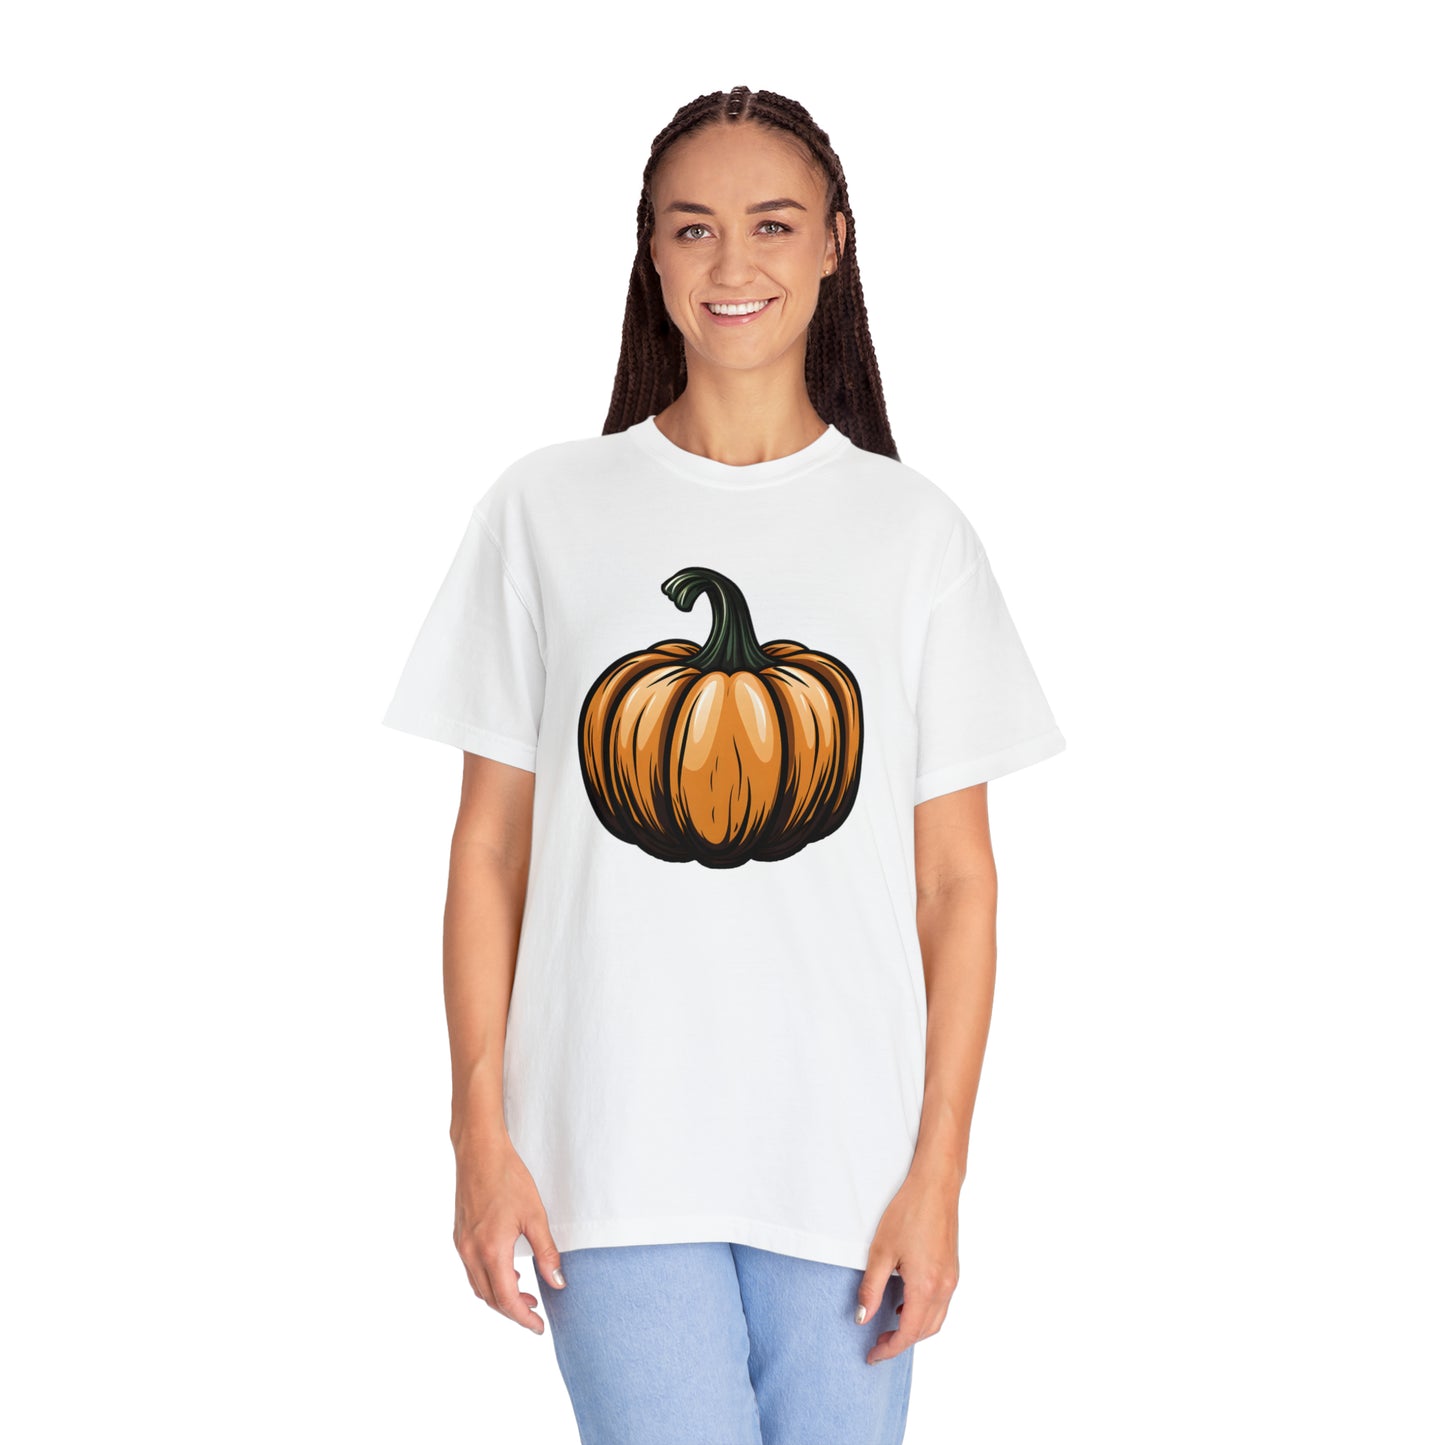 Pumpkin Shirt Halloween Shirt Fall Shirt Halloween Costume Pumpkin T Shirt - Cute Pumpkin Tee fall tshirt Halloween Gift Pumpkin Lover Shirt